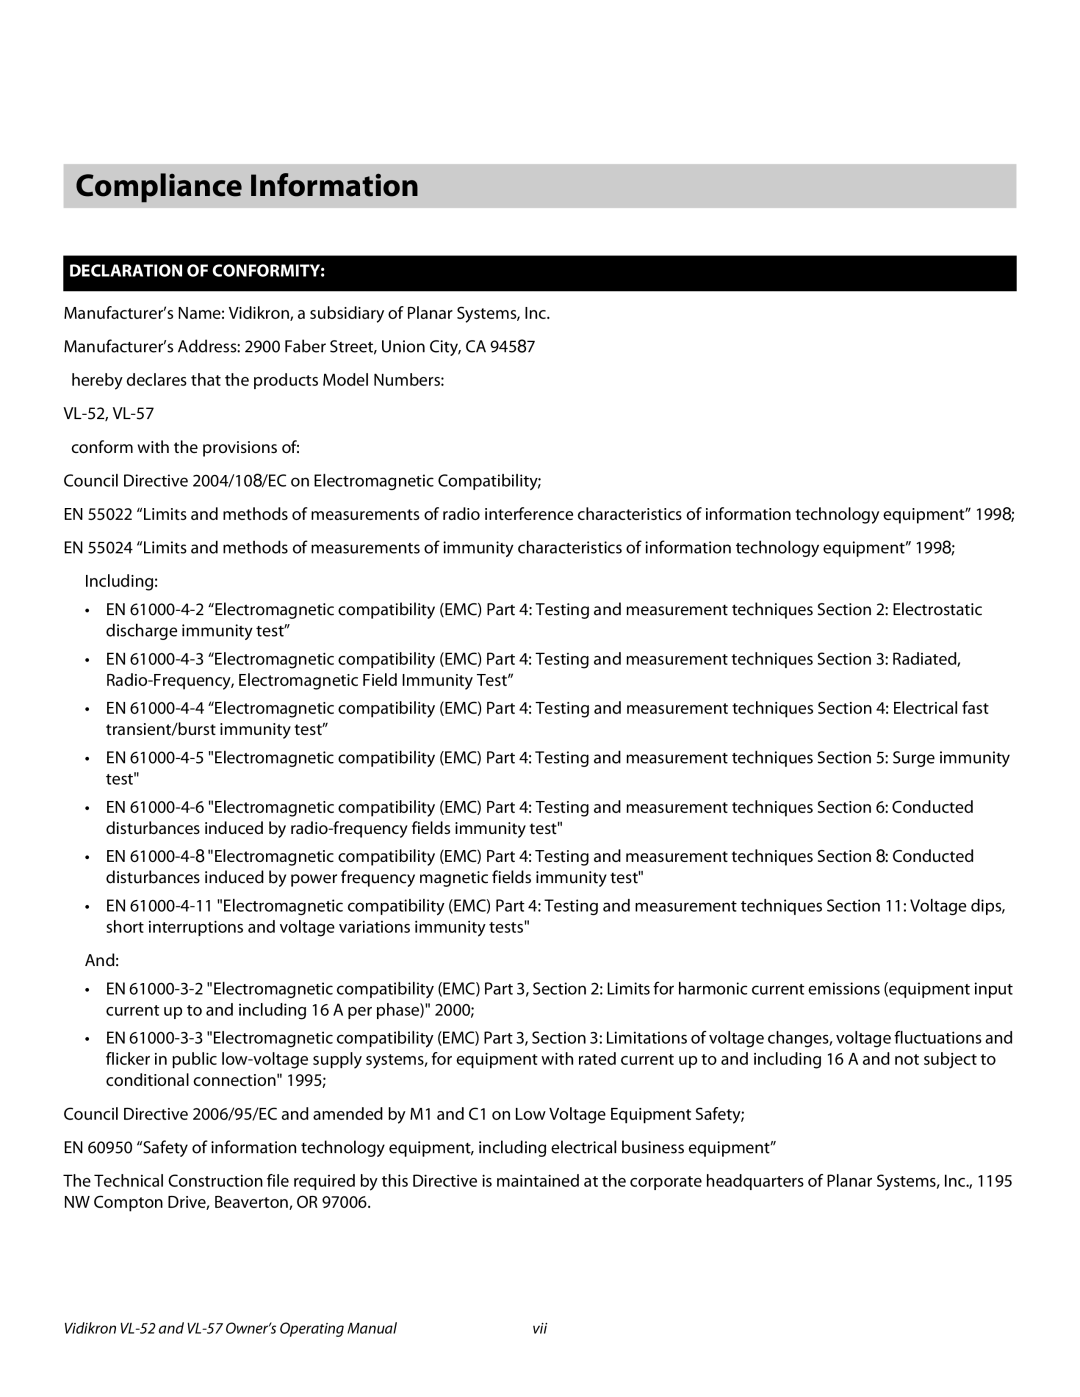 Vidikron VL-57, VL-52 manual Compliance Information, Declaration of Conformity 